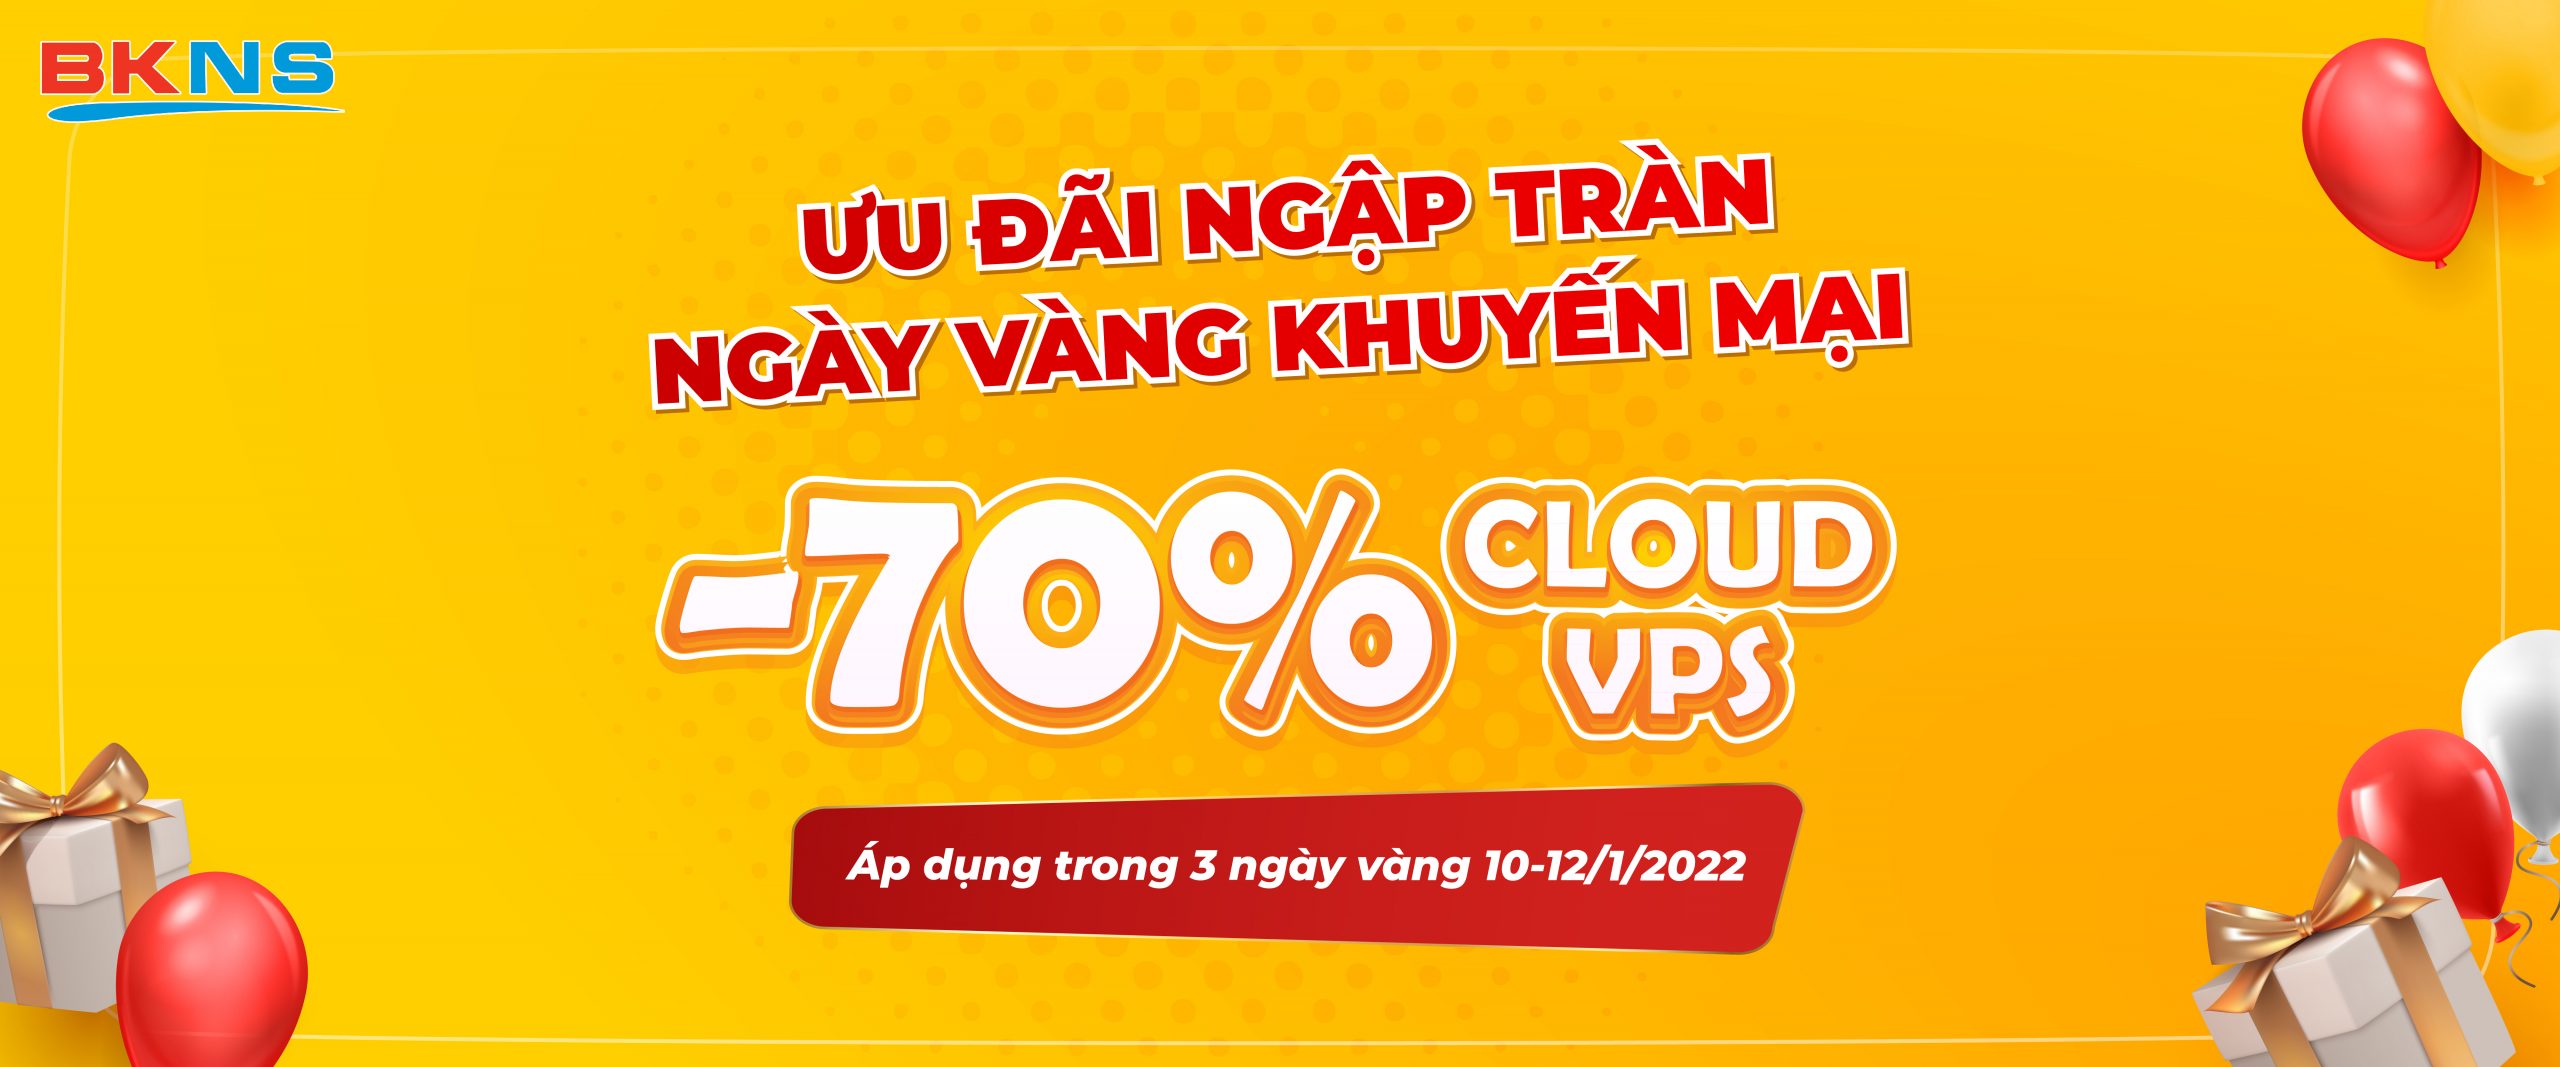 Ngày vàng khuyến mãi, giảm 85% Cloud VPS